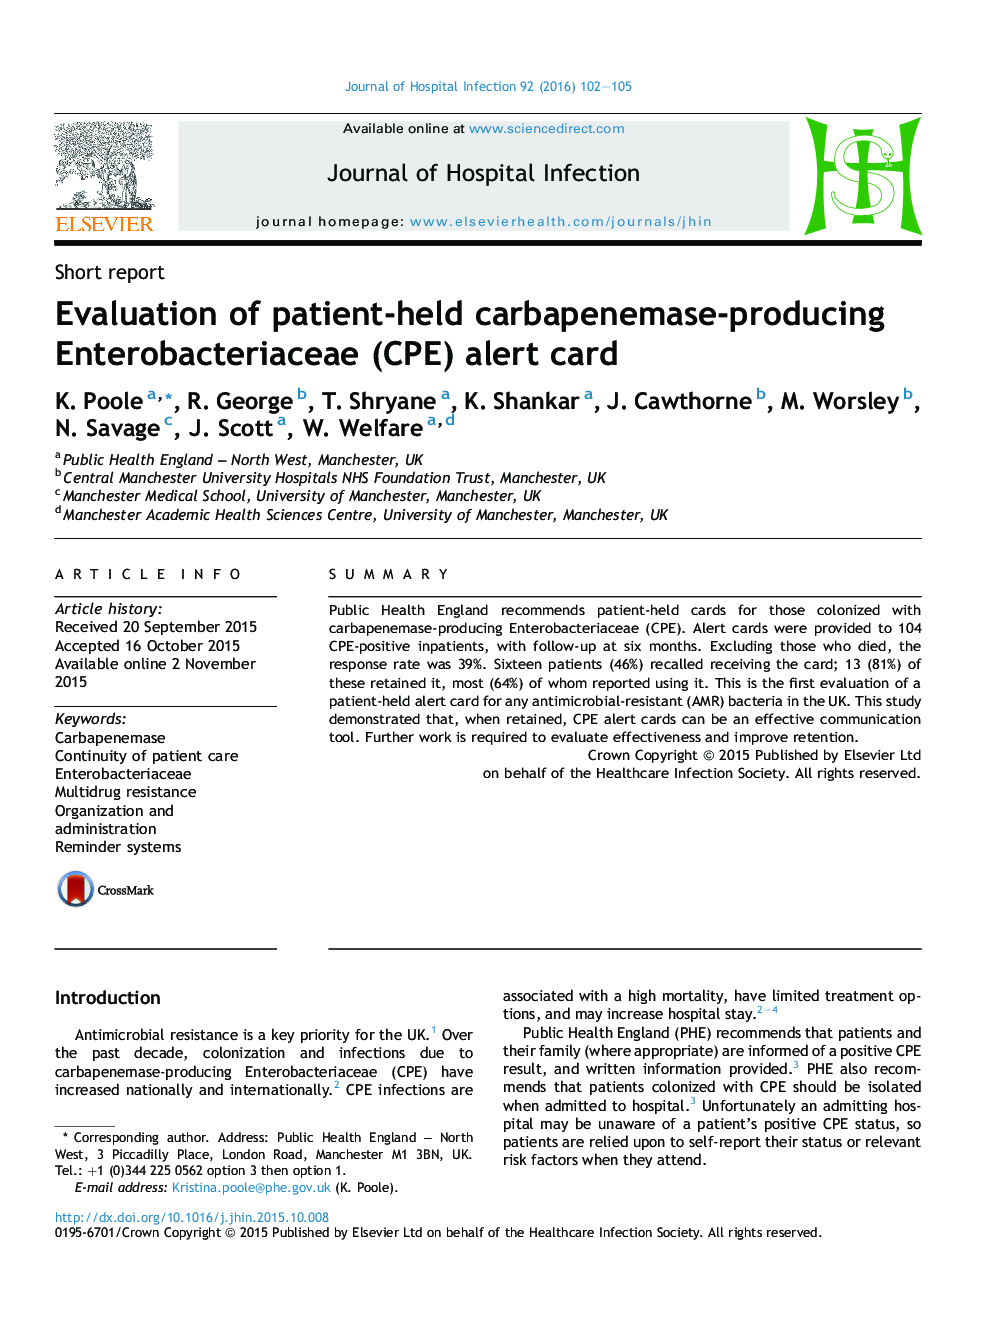 ارزیابی کارت هشدار Enterobacteriaceae (CPE) تولیدکننده کرباپنماز نگهداری شده توسط بیمار